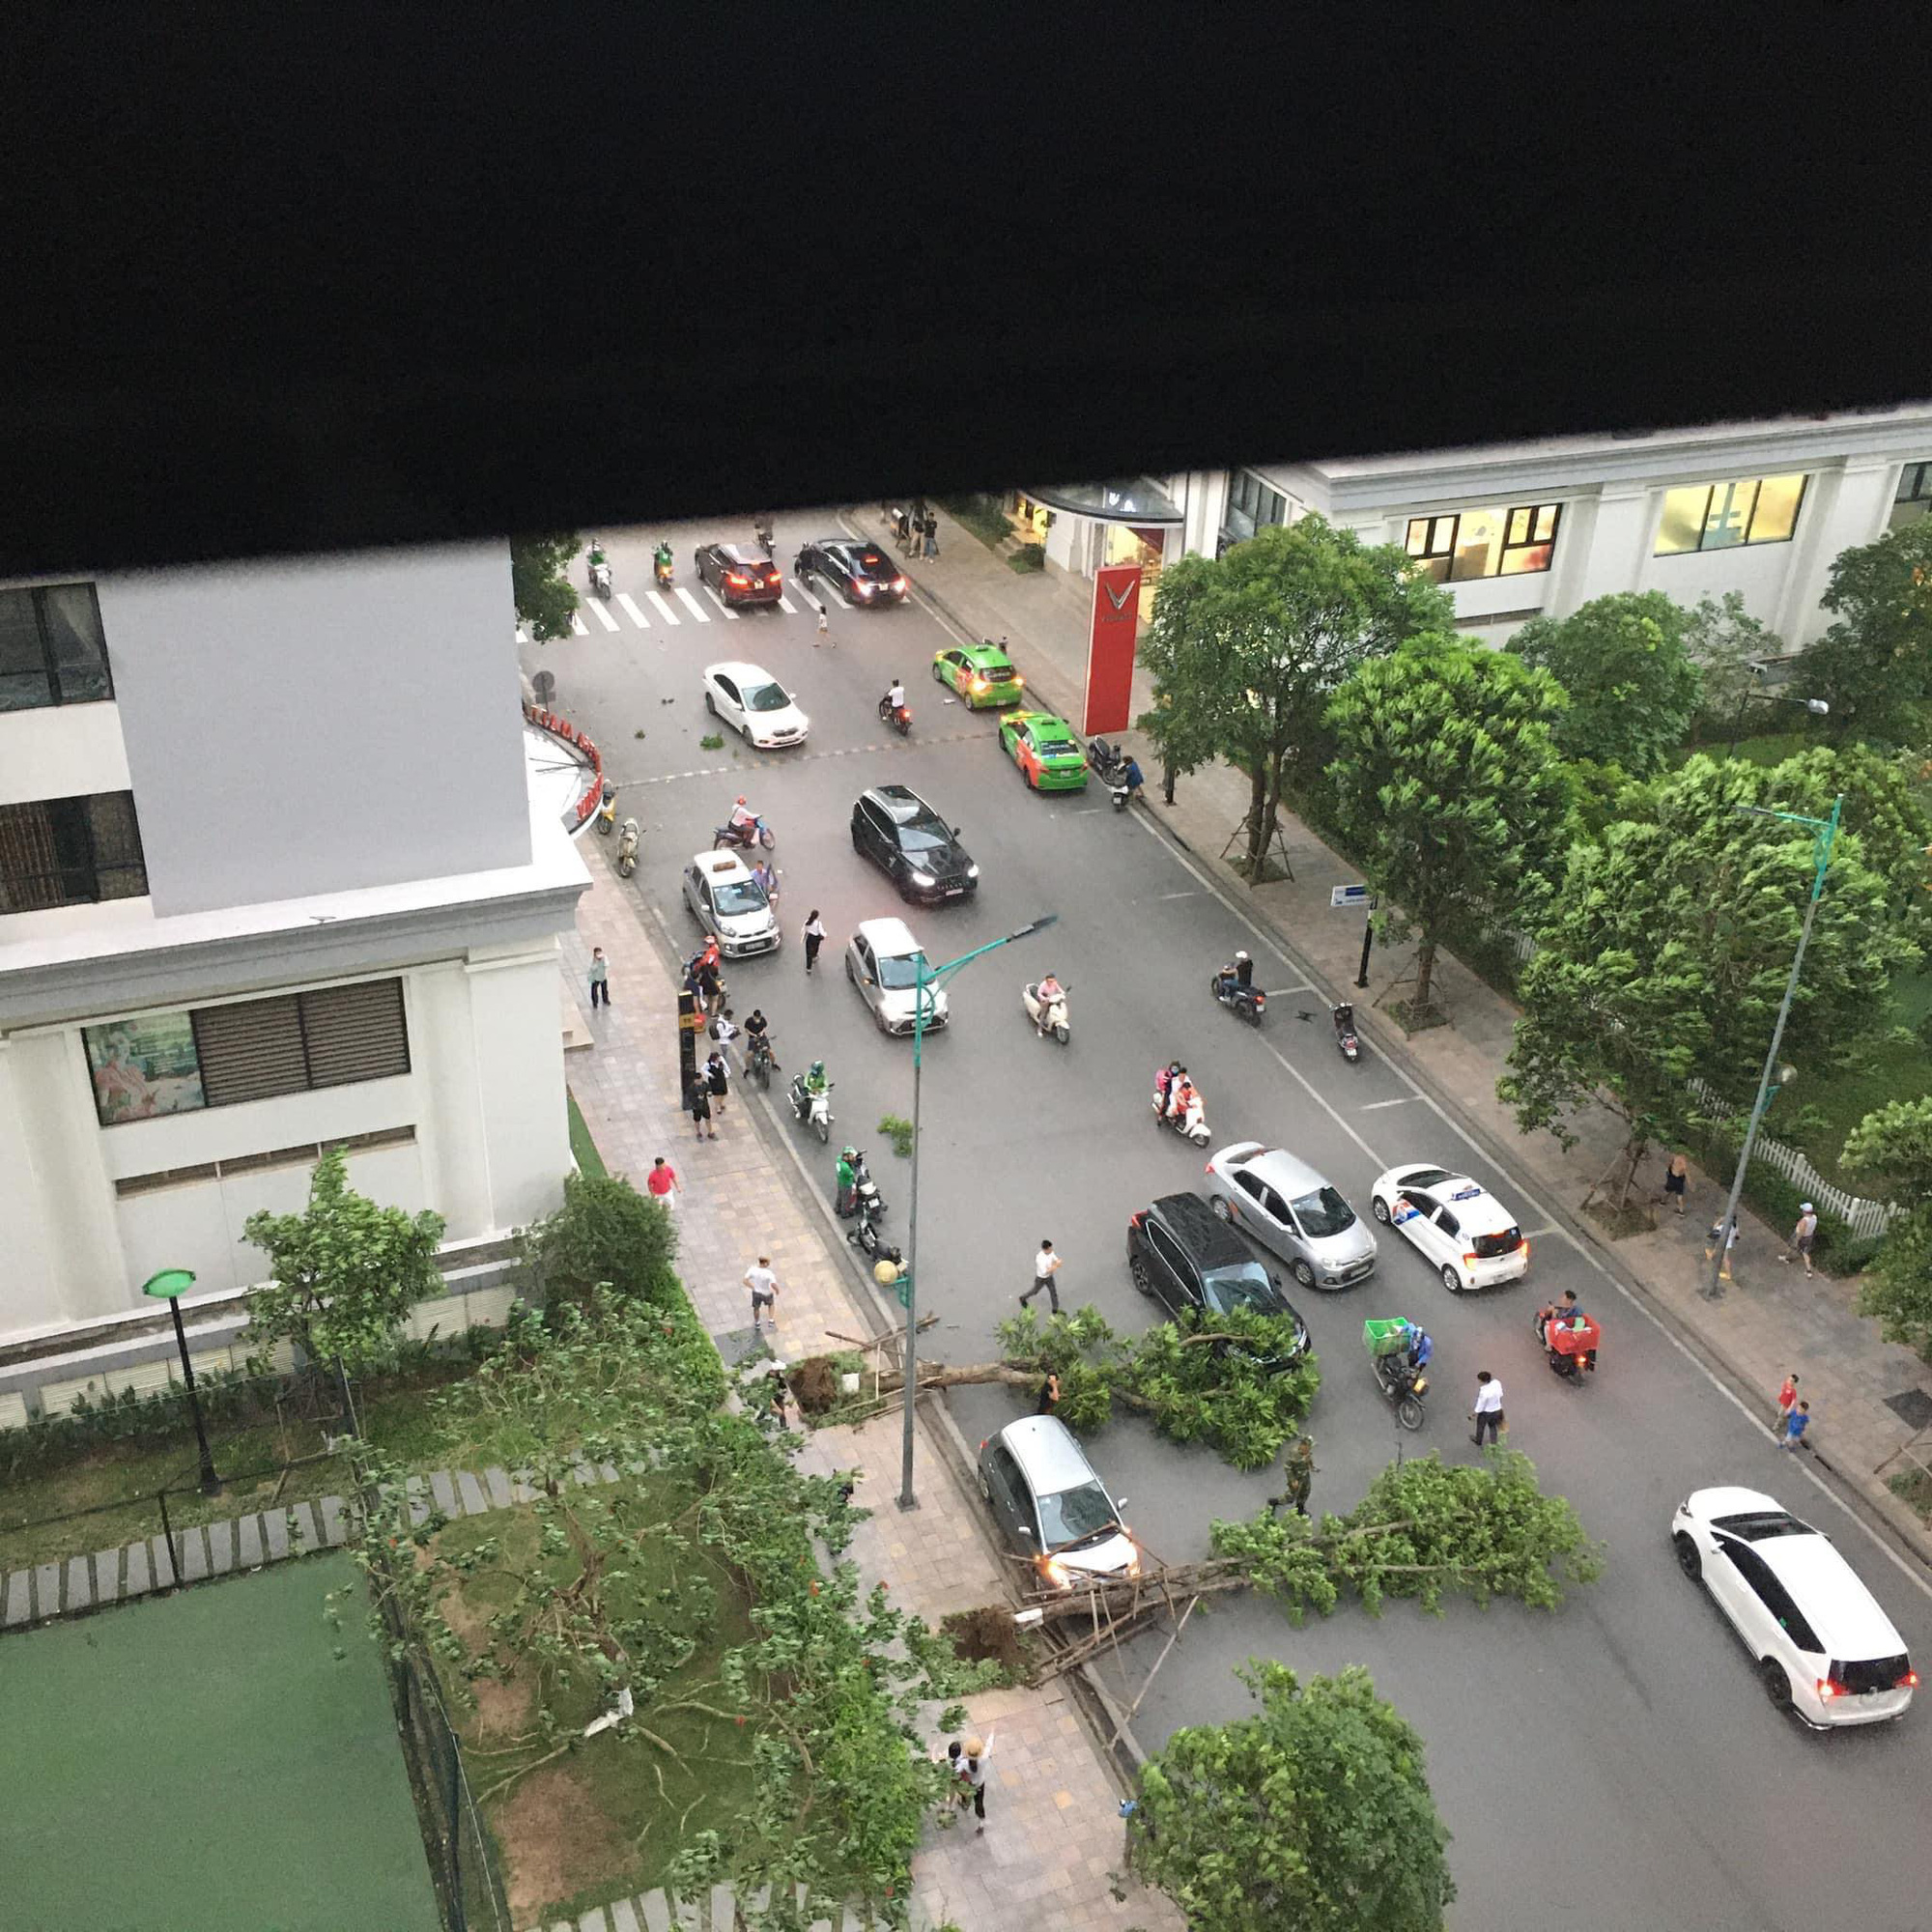 Hà Nội: Cây xanh bật gốc đè trúng ô tô đang chạy trên đường giữa cơn mưa giông bất chợt - Ảnh 1.